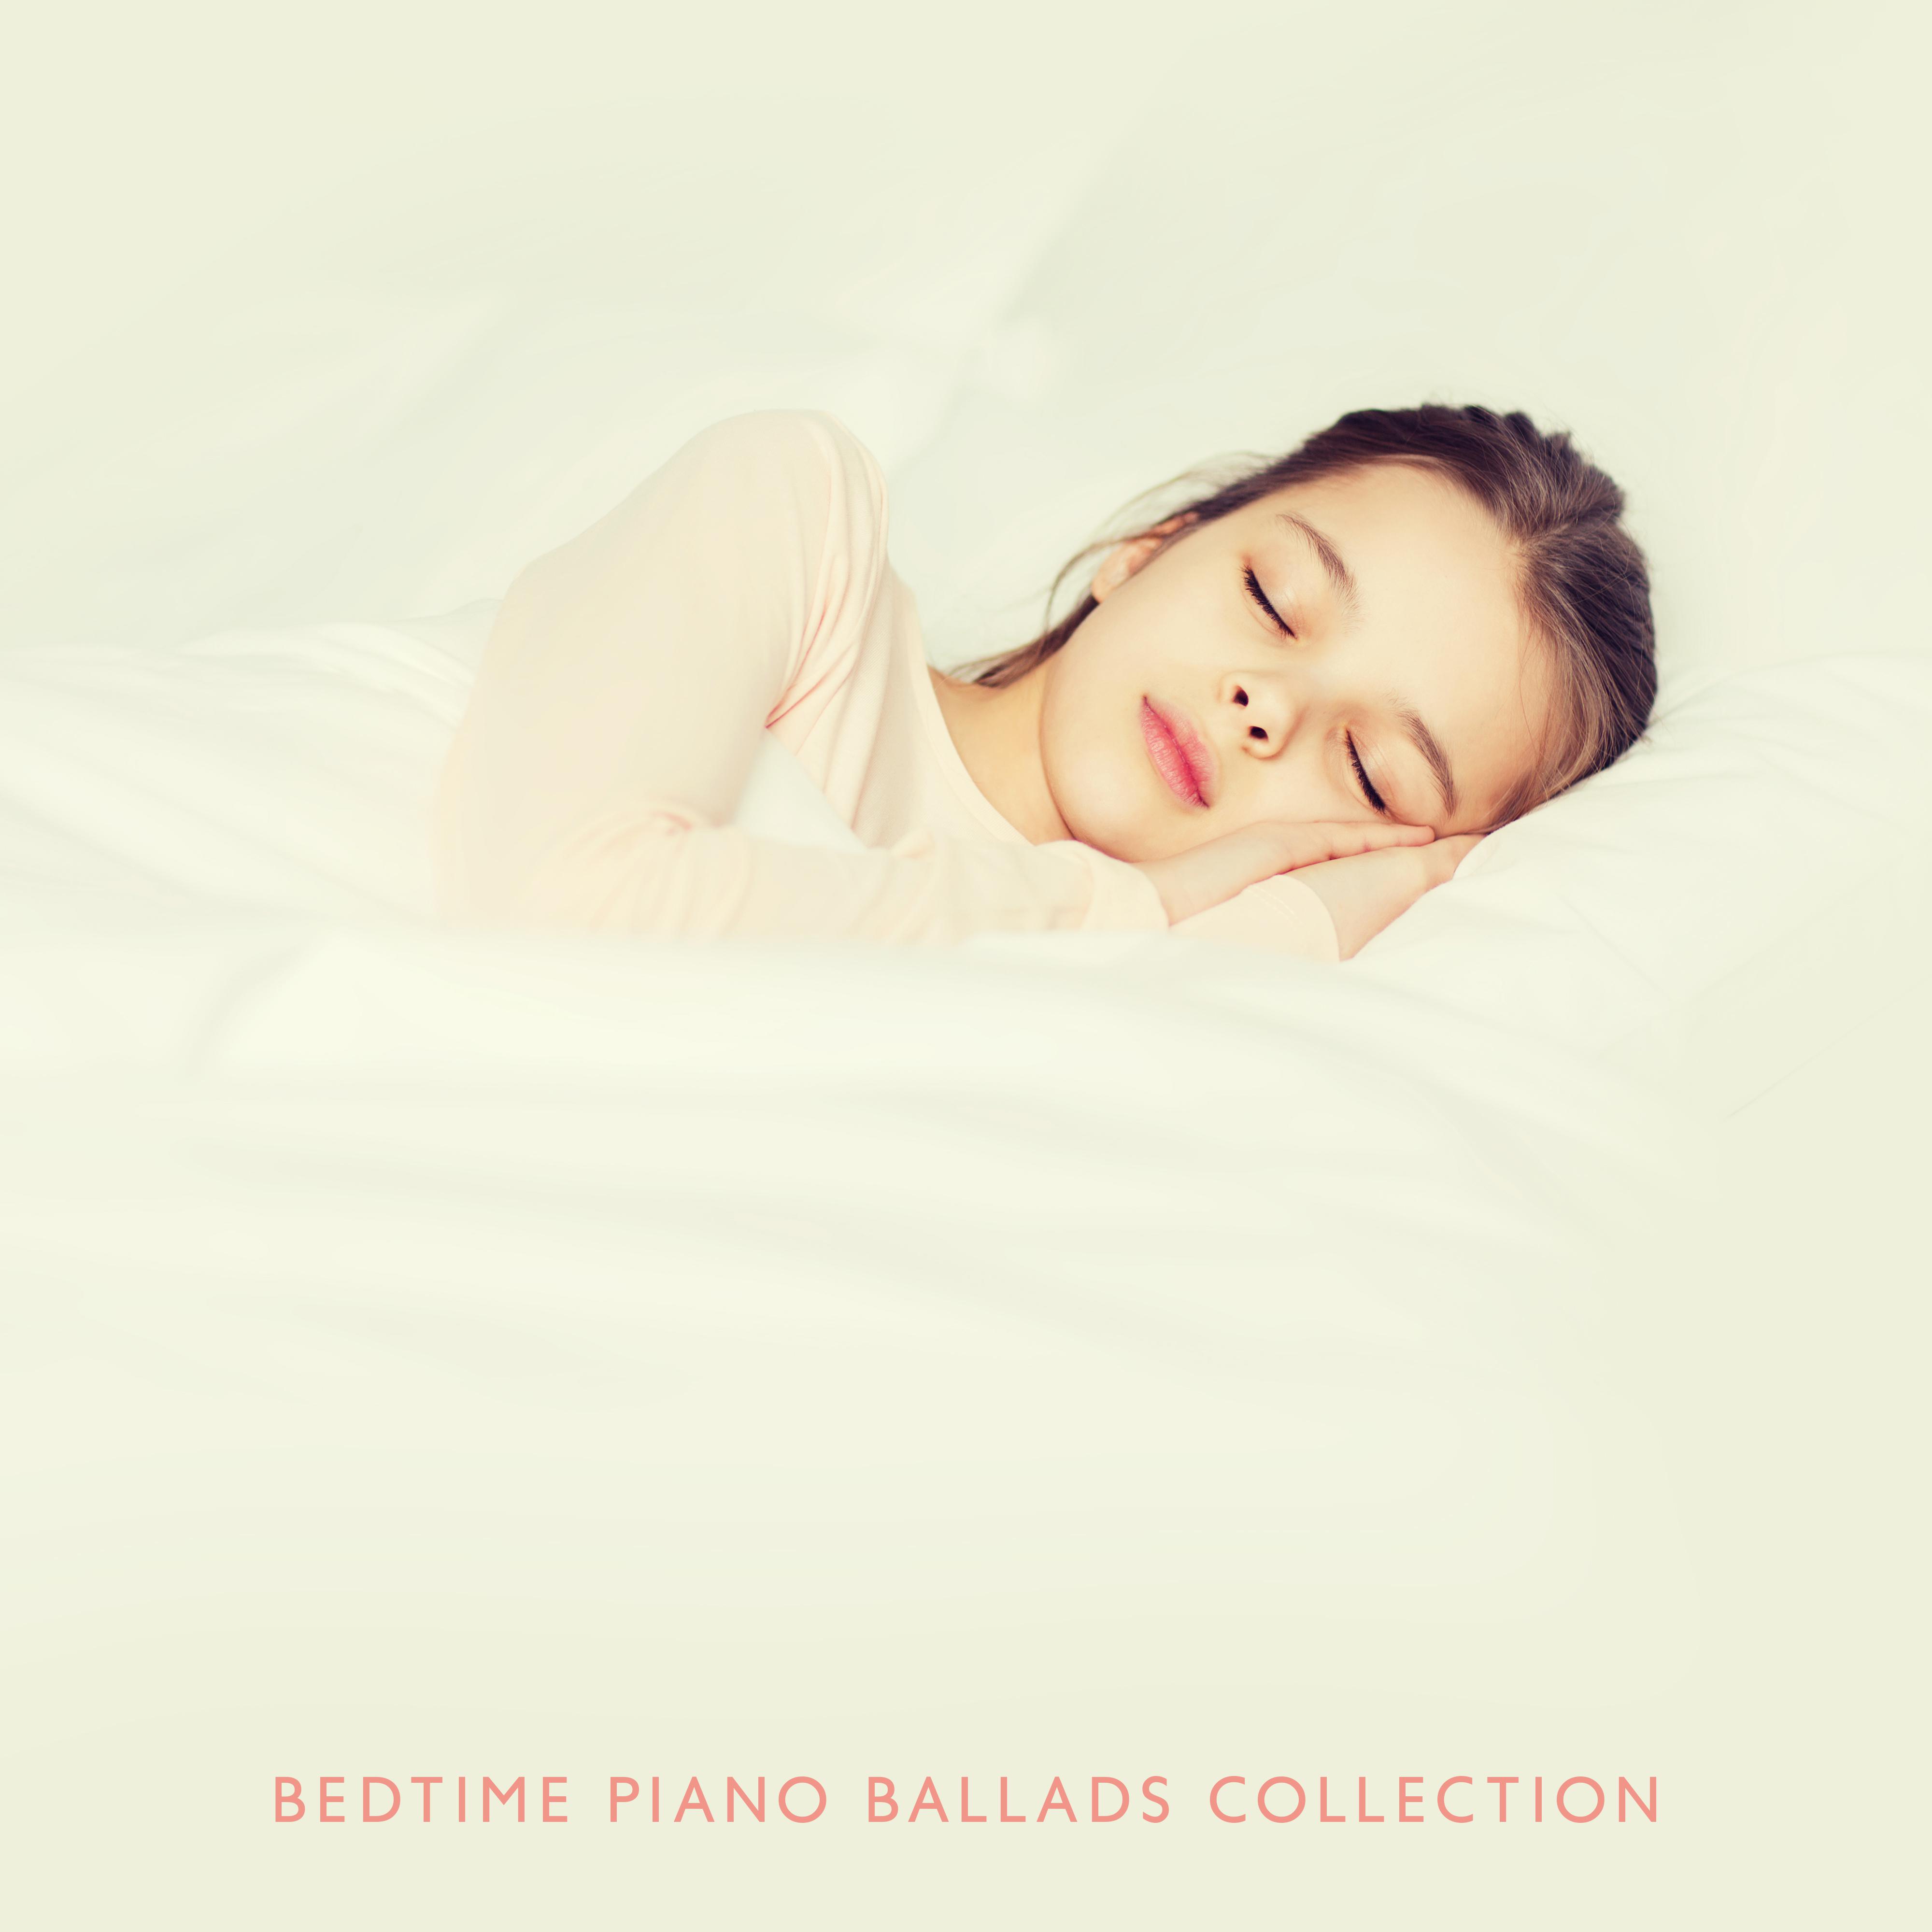 Bedtime Piano Ballads Collection